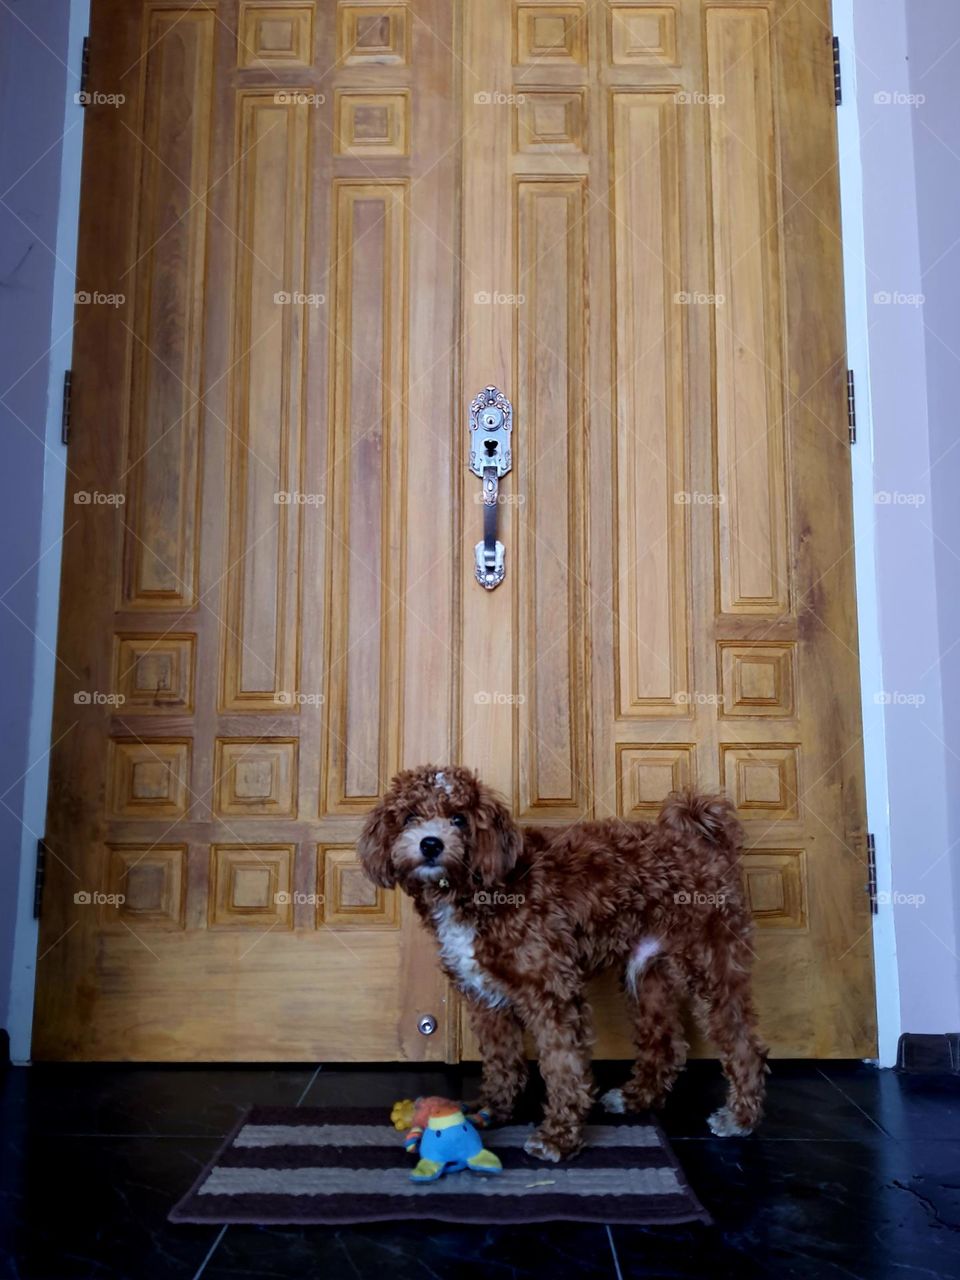 Doggie at the wooden door step